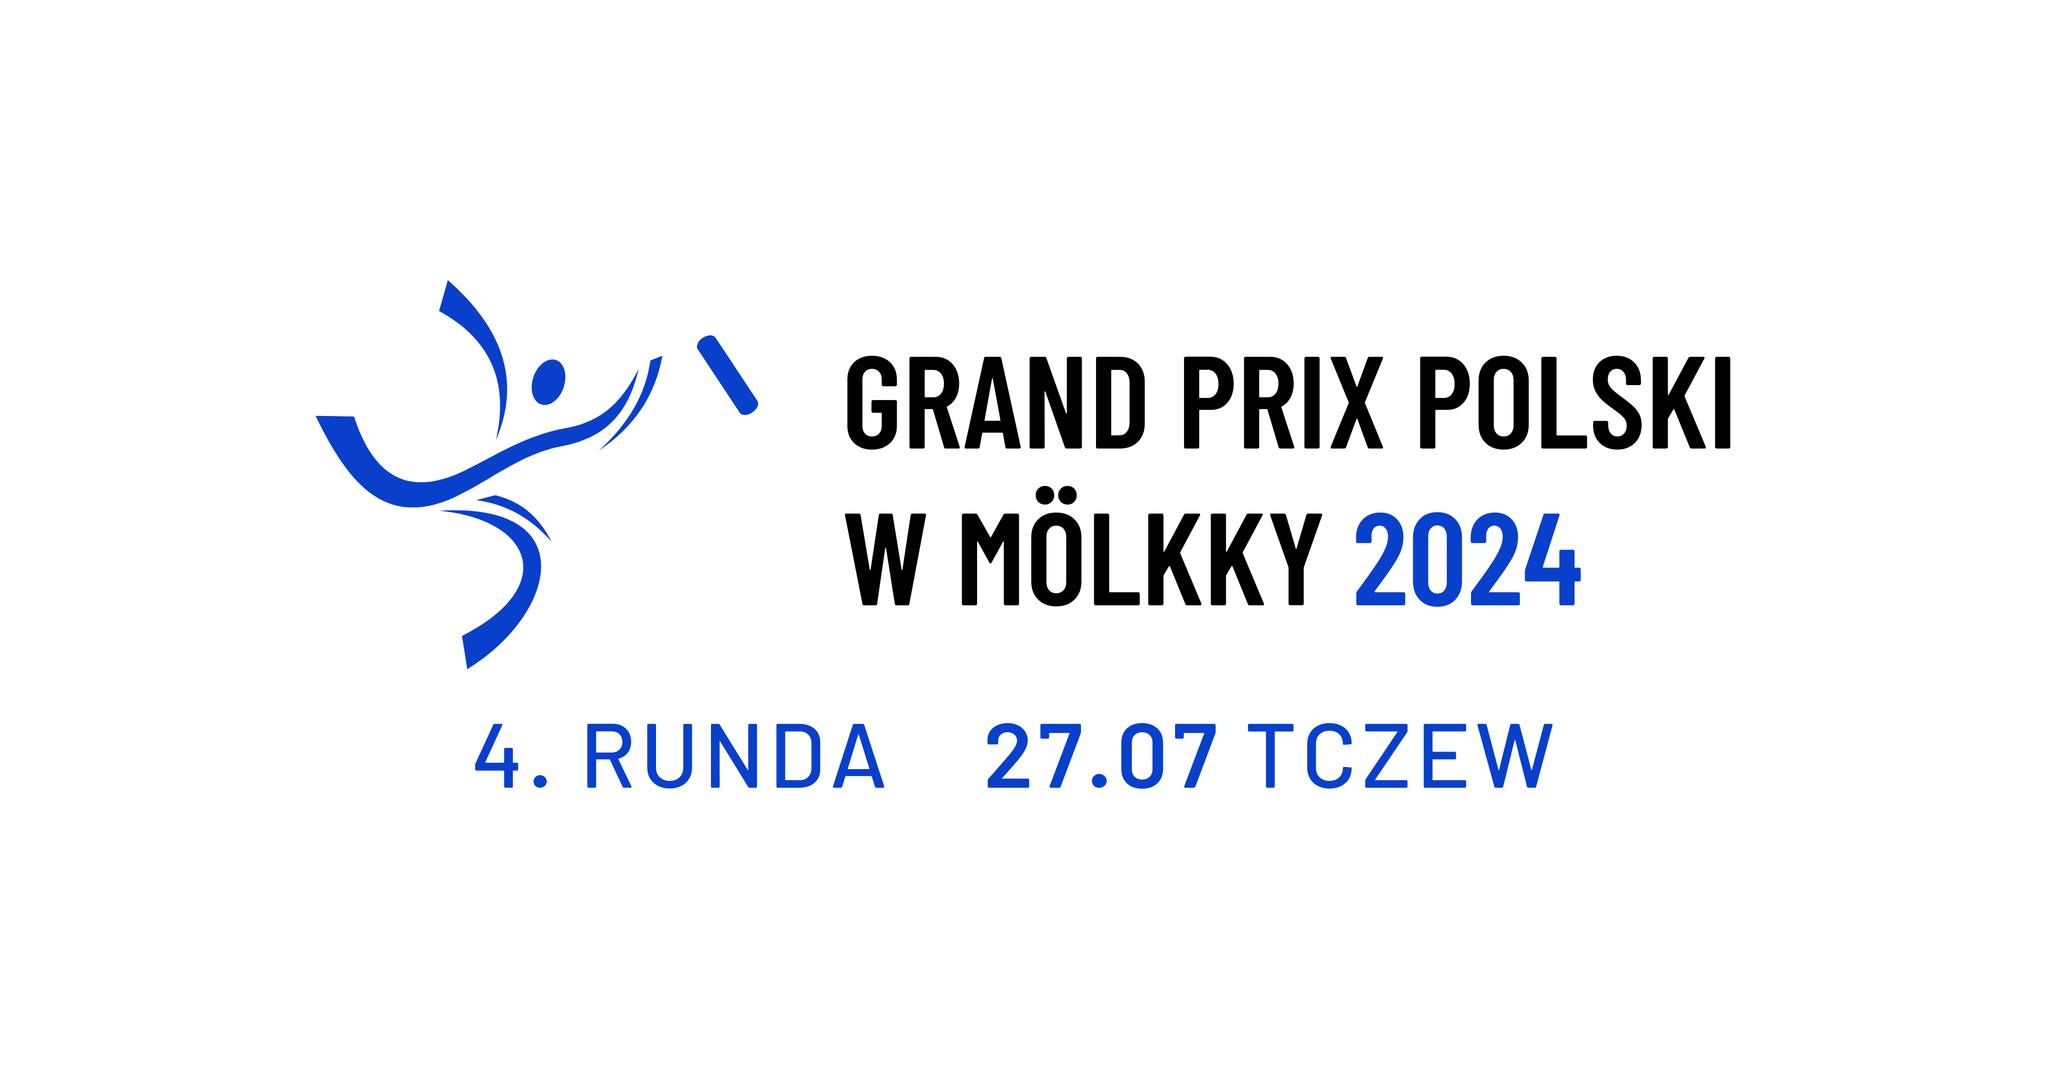 ZaGRYFka Tczew, Polska Federacja Mölkky